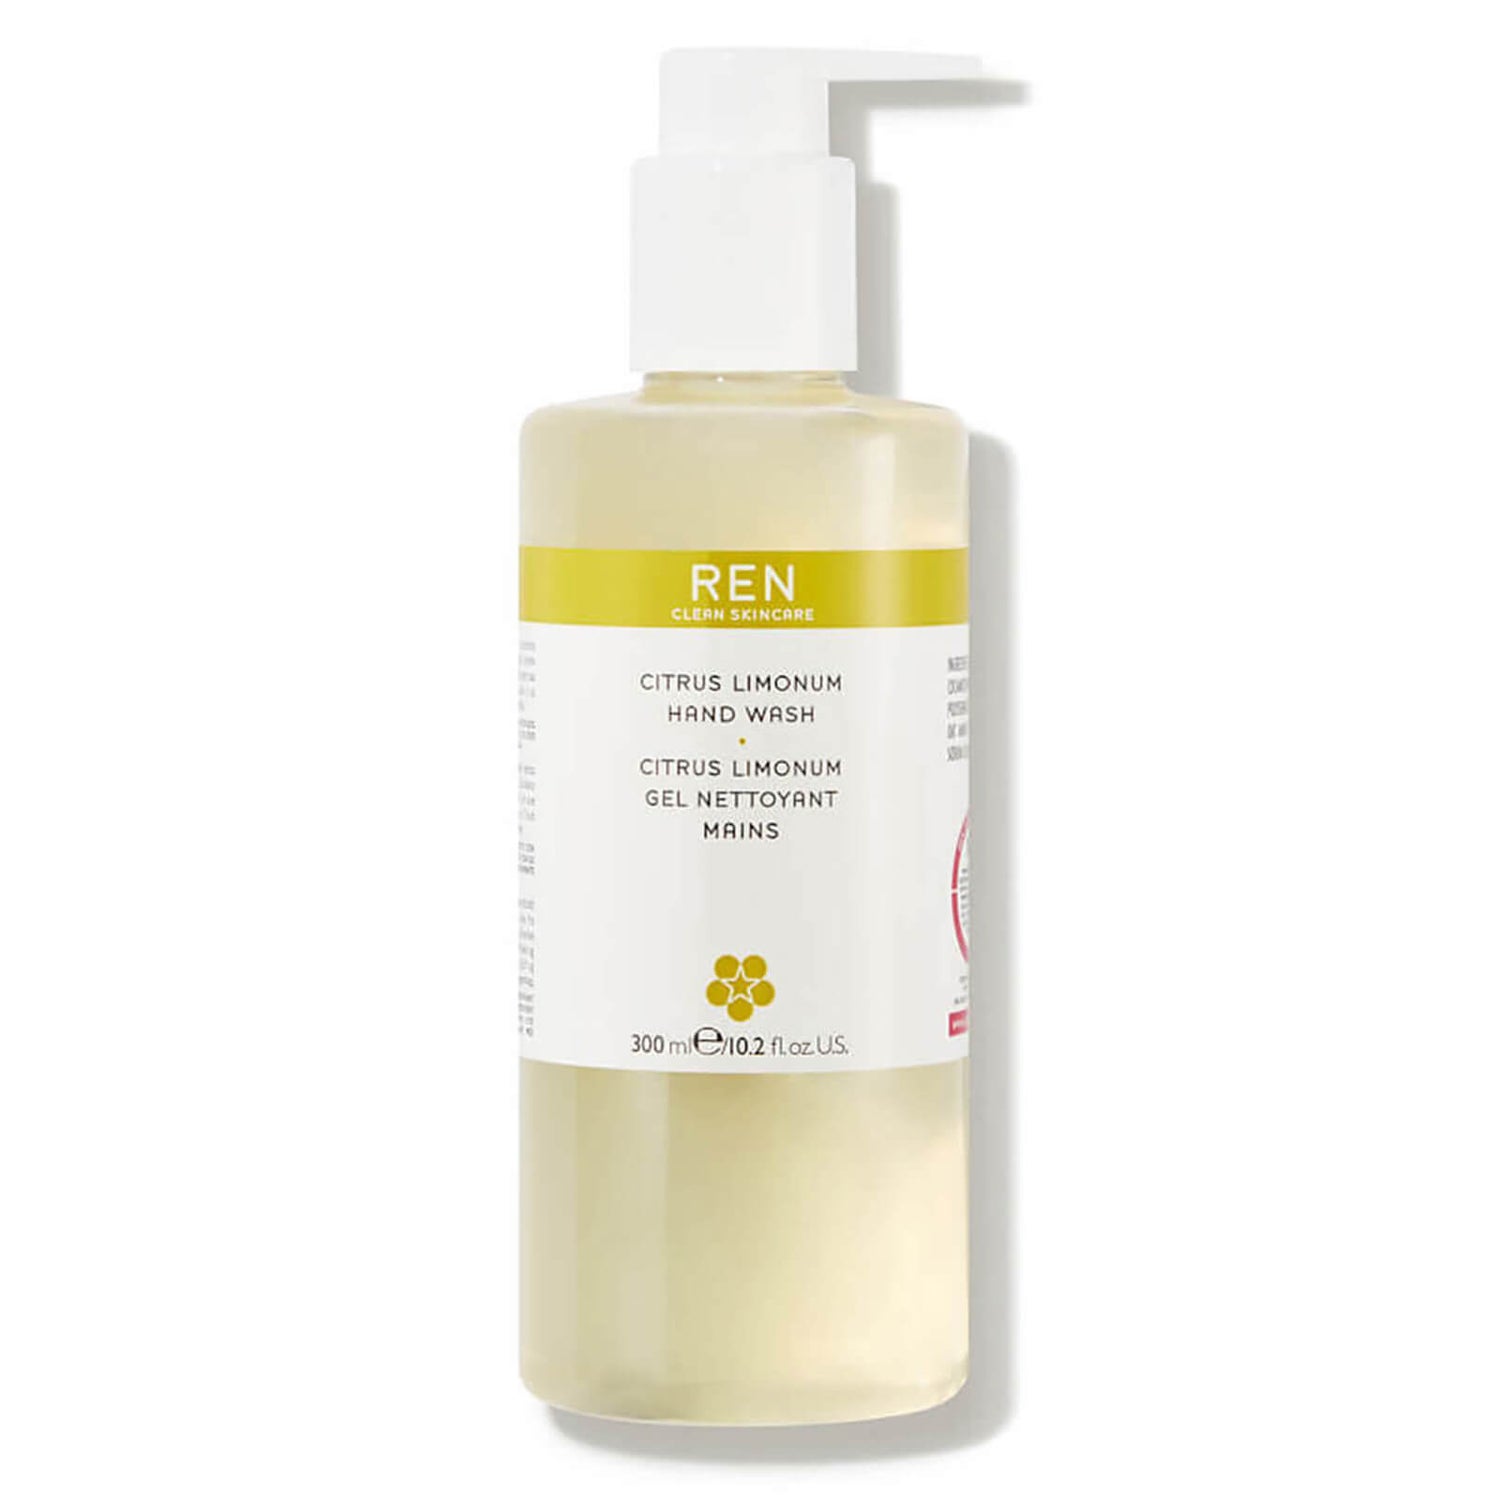 REN Clean Skincare detergente mani citrus limonum (300 ml)